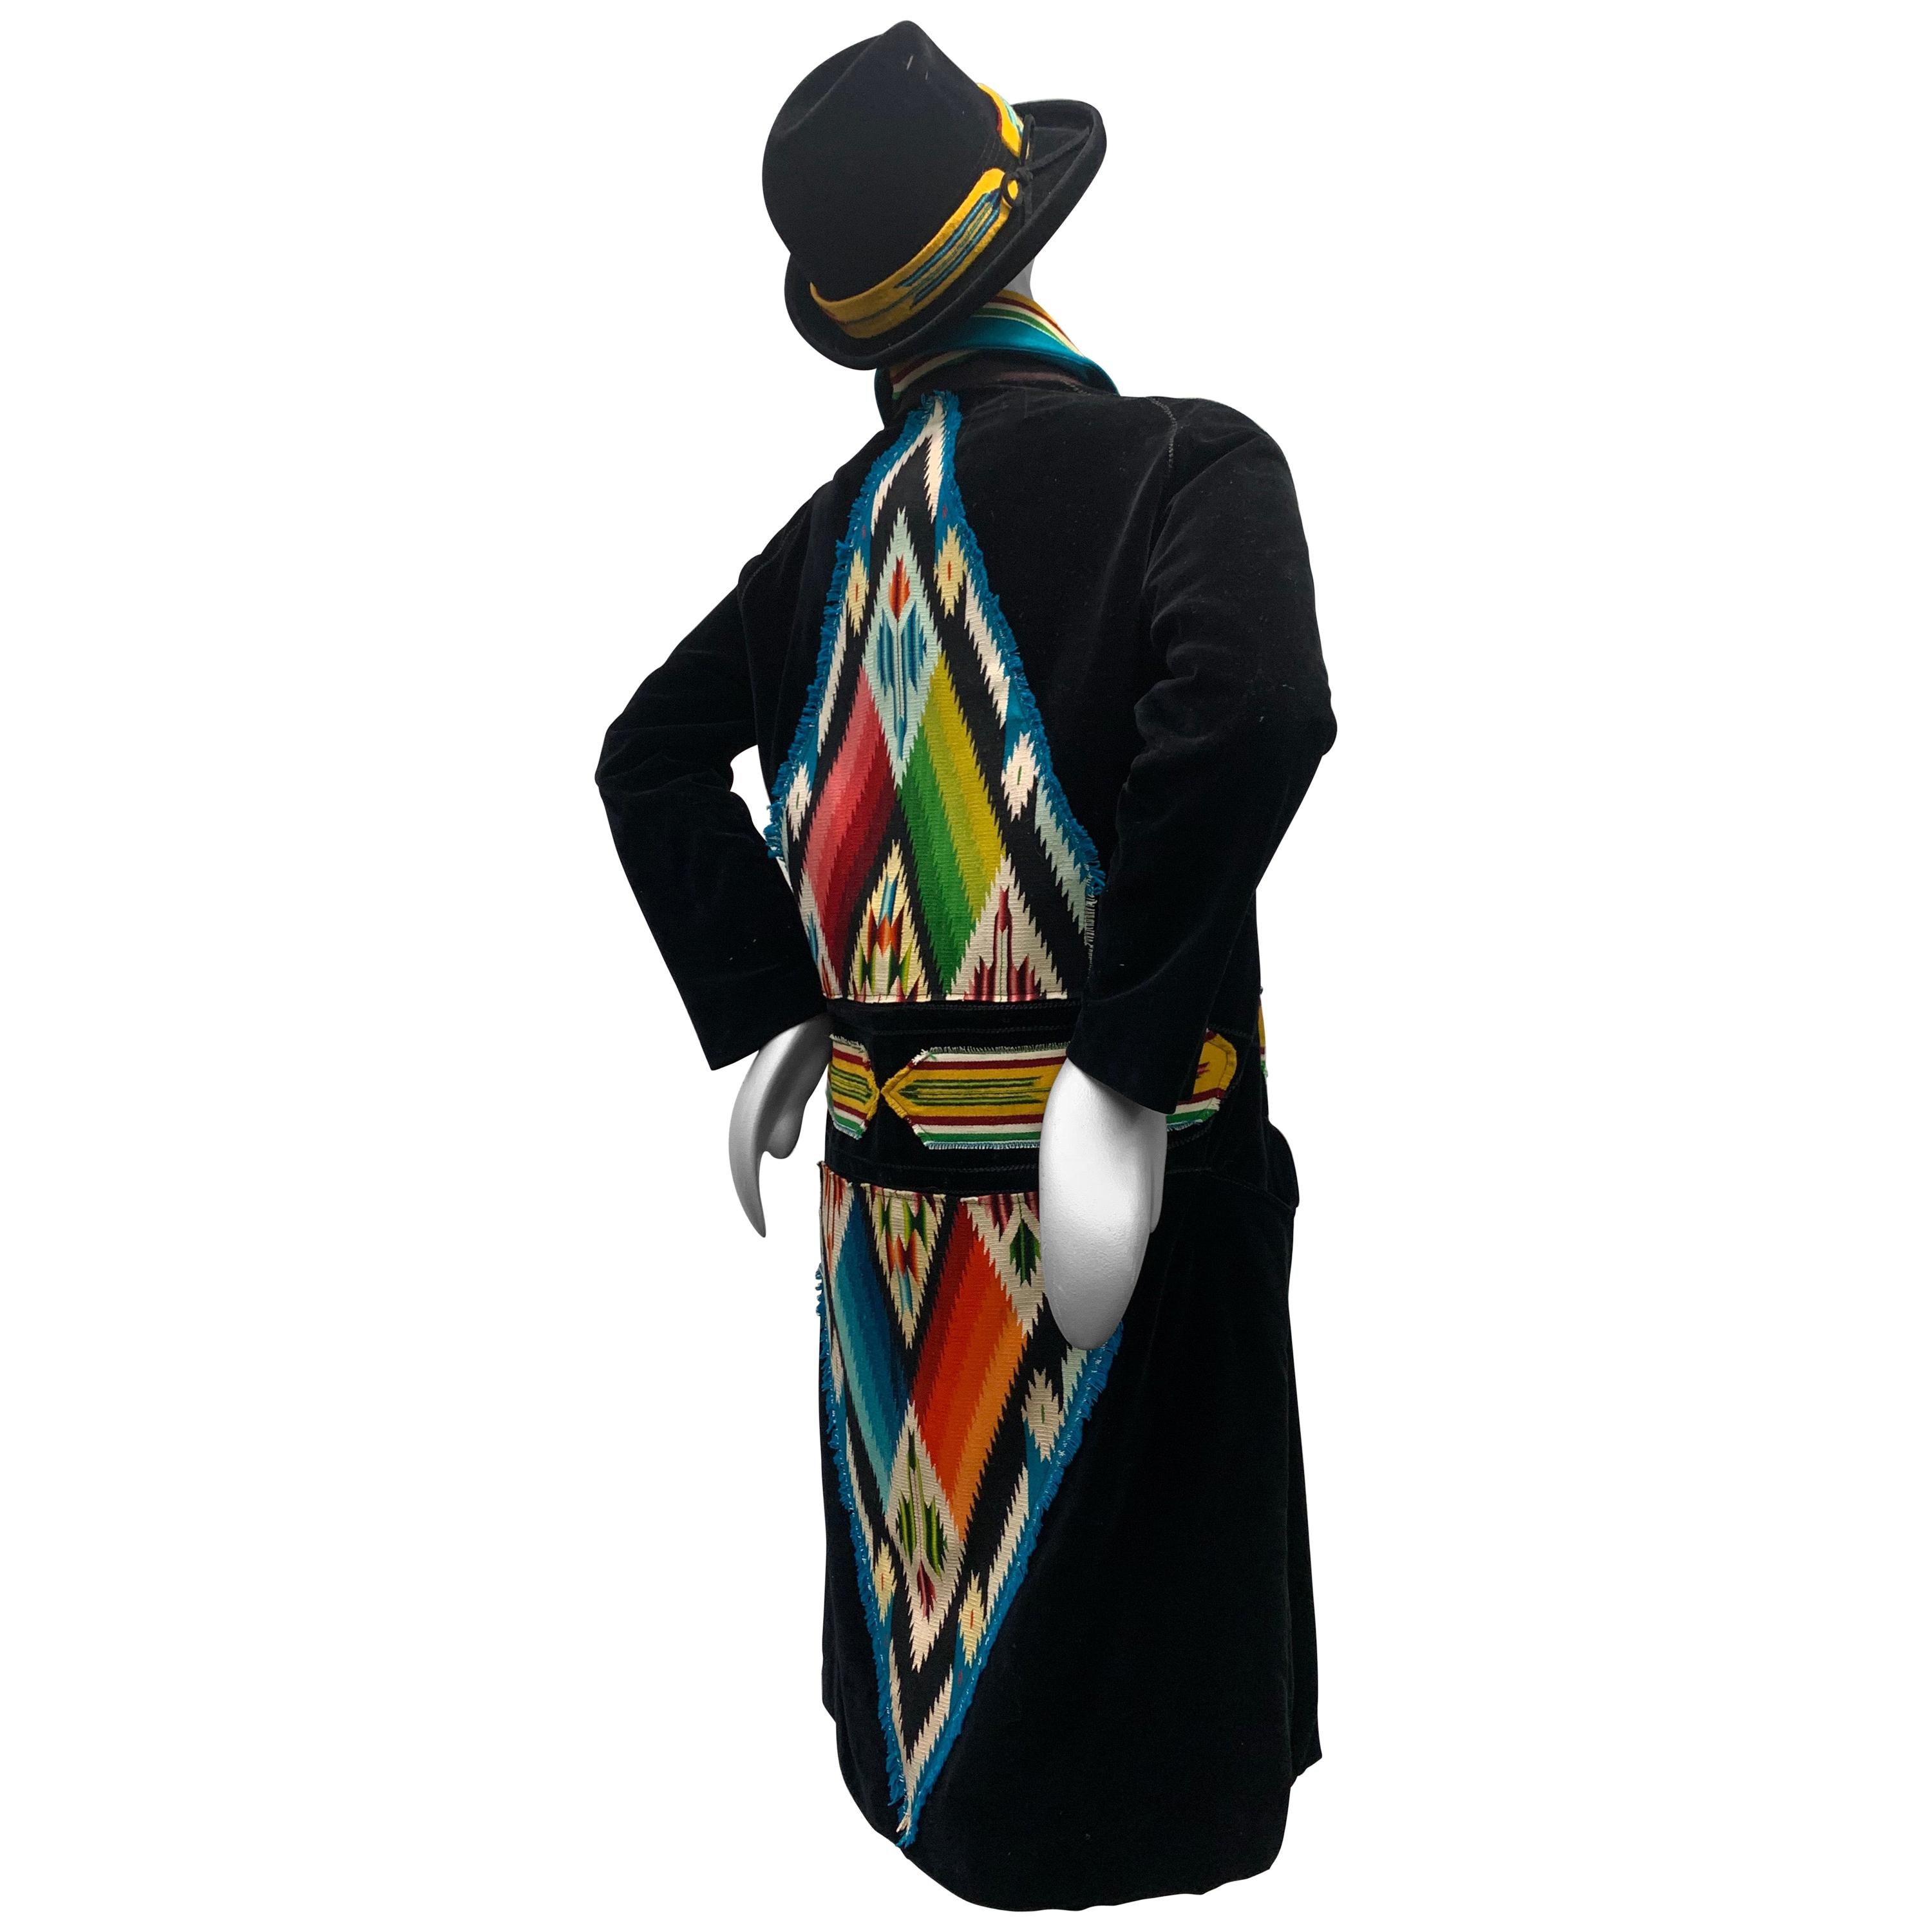 Hammerschmid Tradycyjna kurtka jasnobe\u017cowy-ciemnozielony Ozdobne guziki Moda Strój tradycyjny Tradycyjne kurtki 